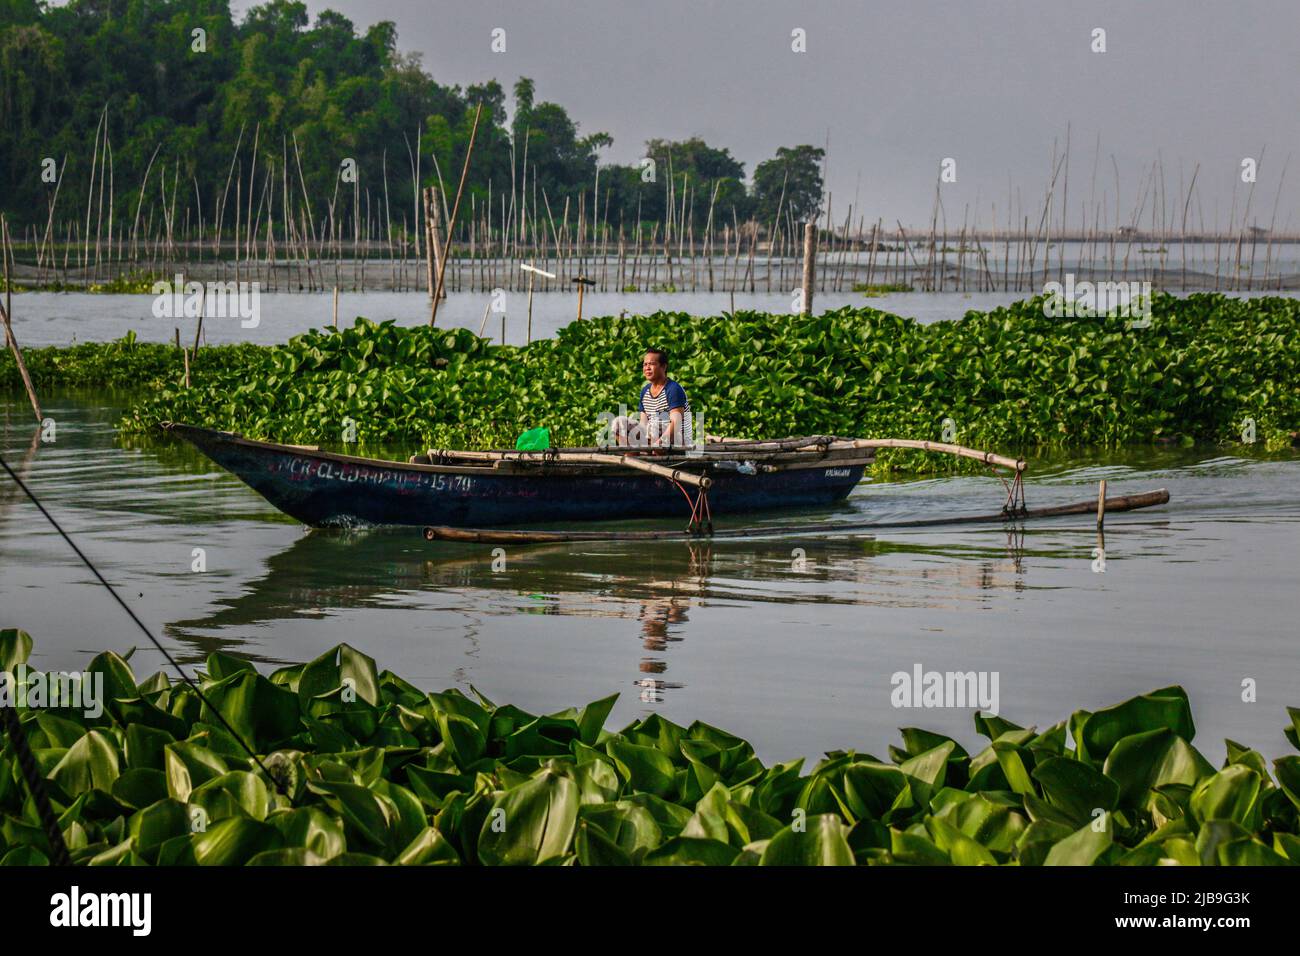 Binangonan, Philippines. 04th juin 2022. Un pêcheur lance son petit bateau entre des jacinthes d'eau flottantes. Le lac Laguna est le plus grand lac des Philippines, d'une superficie de 900 kilomètres carrés ou équivalente à 90 000 hectares. Son eau s'écoule de la province de Laguna jusqu'à la province de Rizal, la partie sud de Luzon. Le lac fournit des ressources comme le transport, les loisirs, les moyens de subsistance et surtout de la nourriture pour les communautés environnantes. Le lac Laguna est classé comme eau douce de classe C, qui a la capacité de cultiver des poissons et d'autres ressources aquatiques. Un peu d'aquarelle Banque D'Images